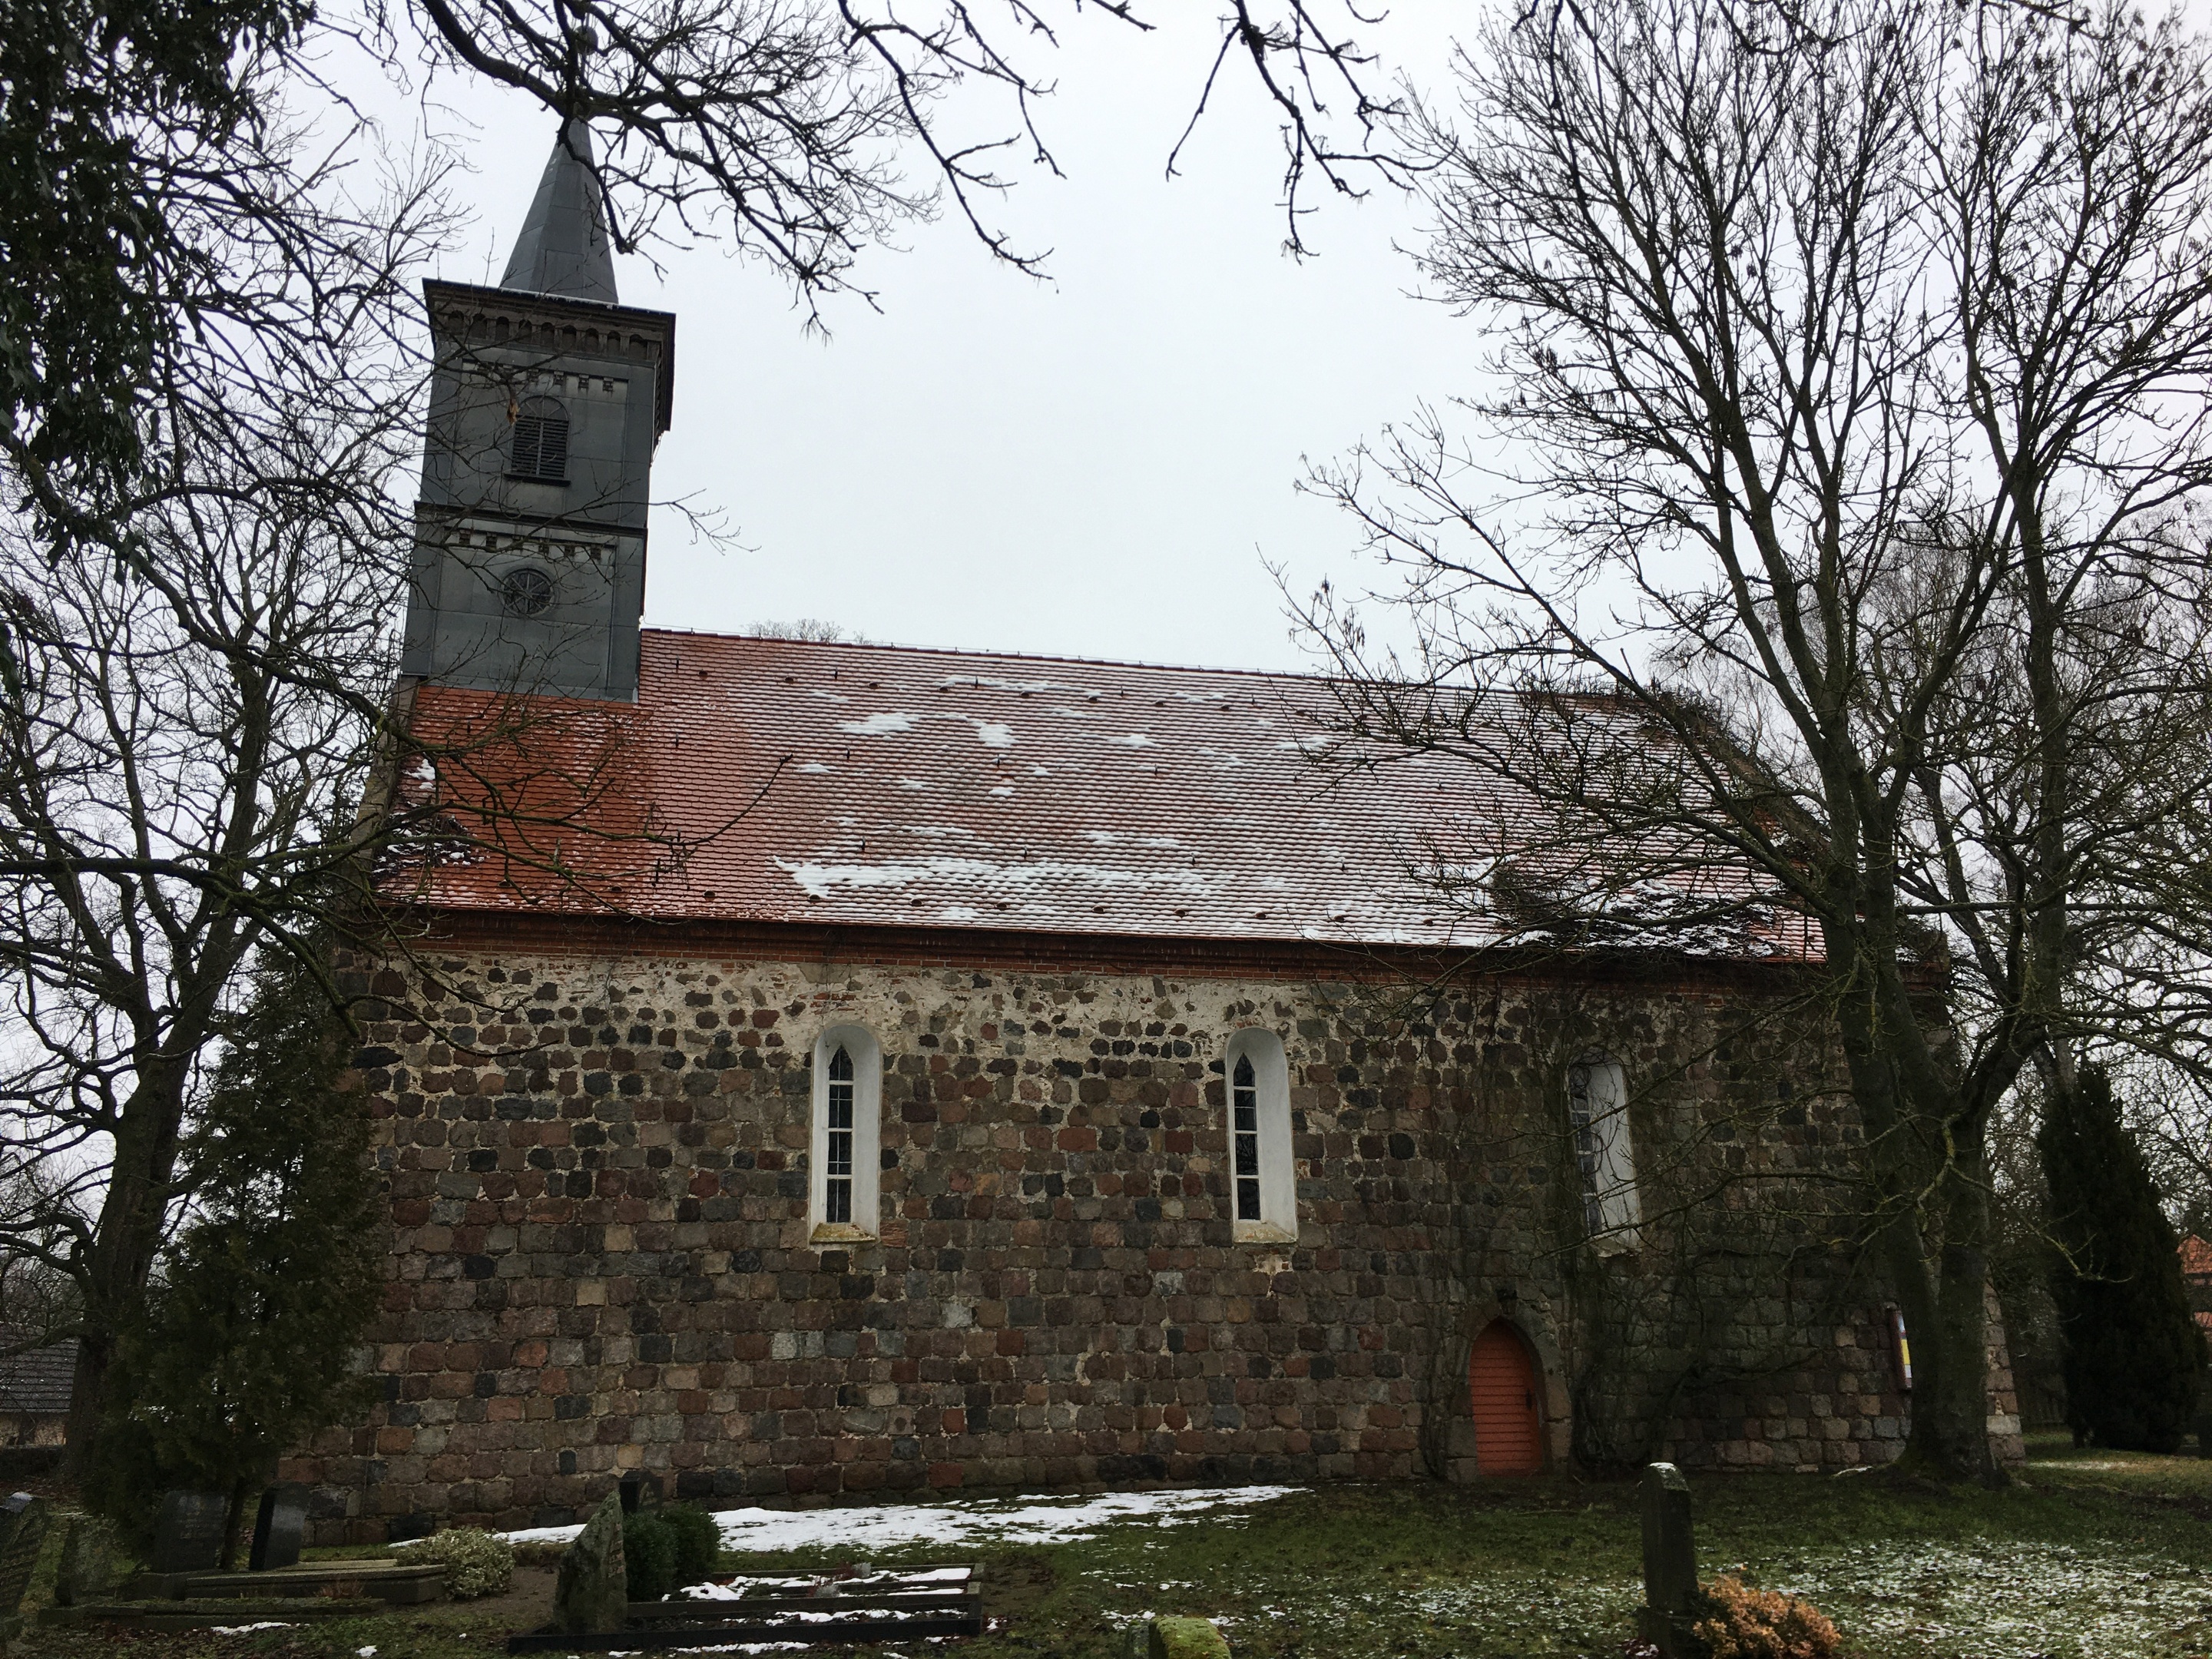 Dorfkirche Neuenfeld im Winter, Foto: Anja Warning, Lizenz: Anja Warning